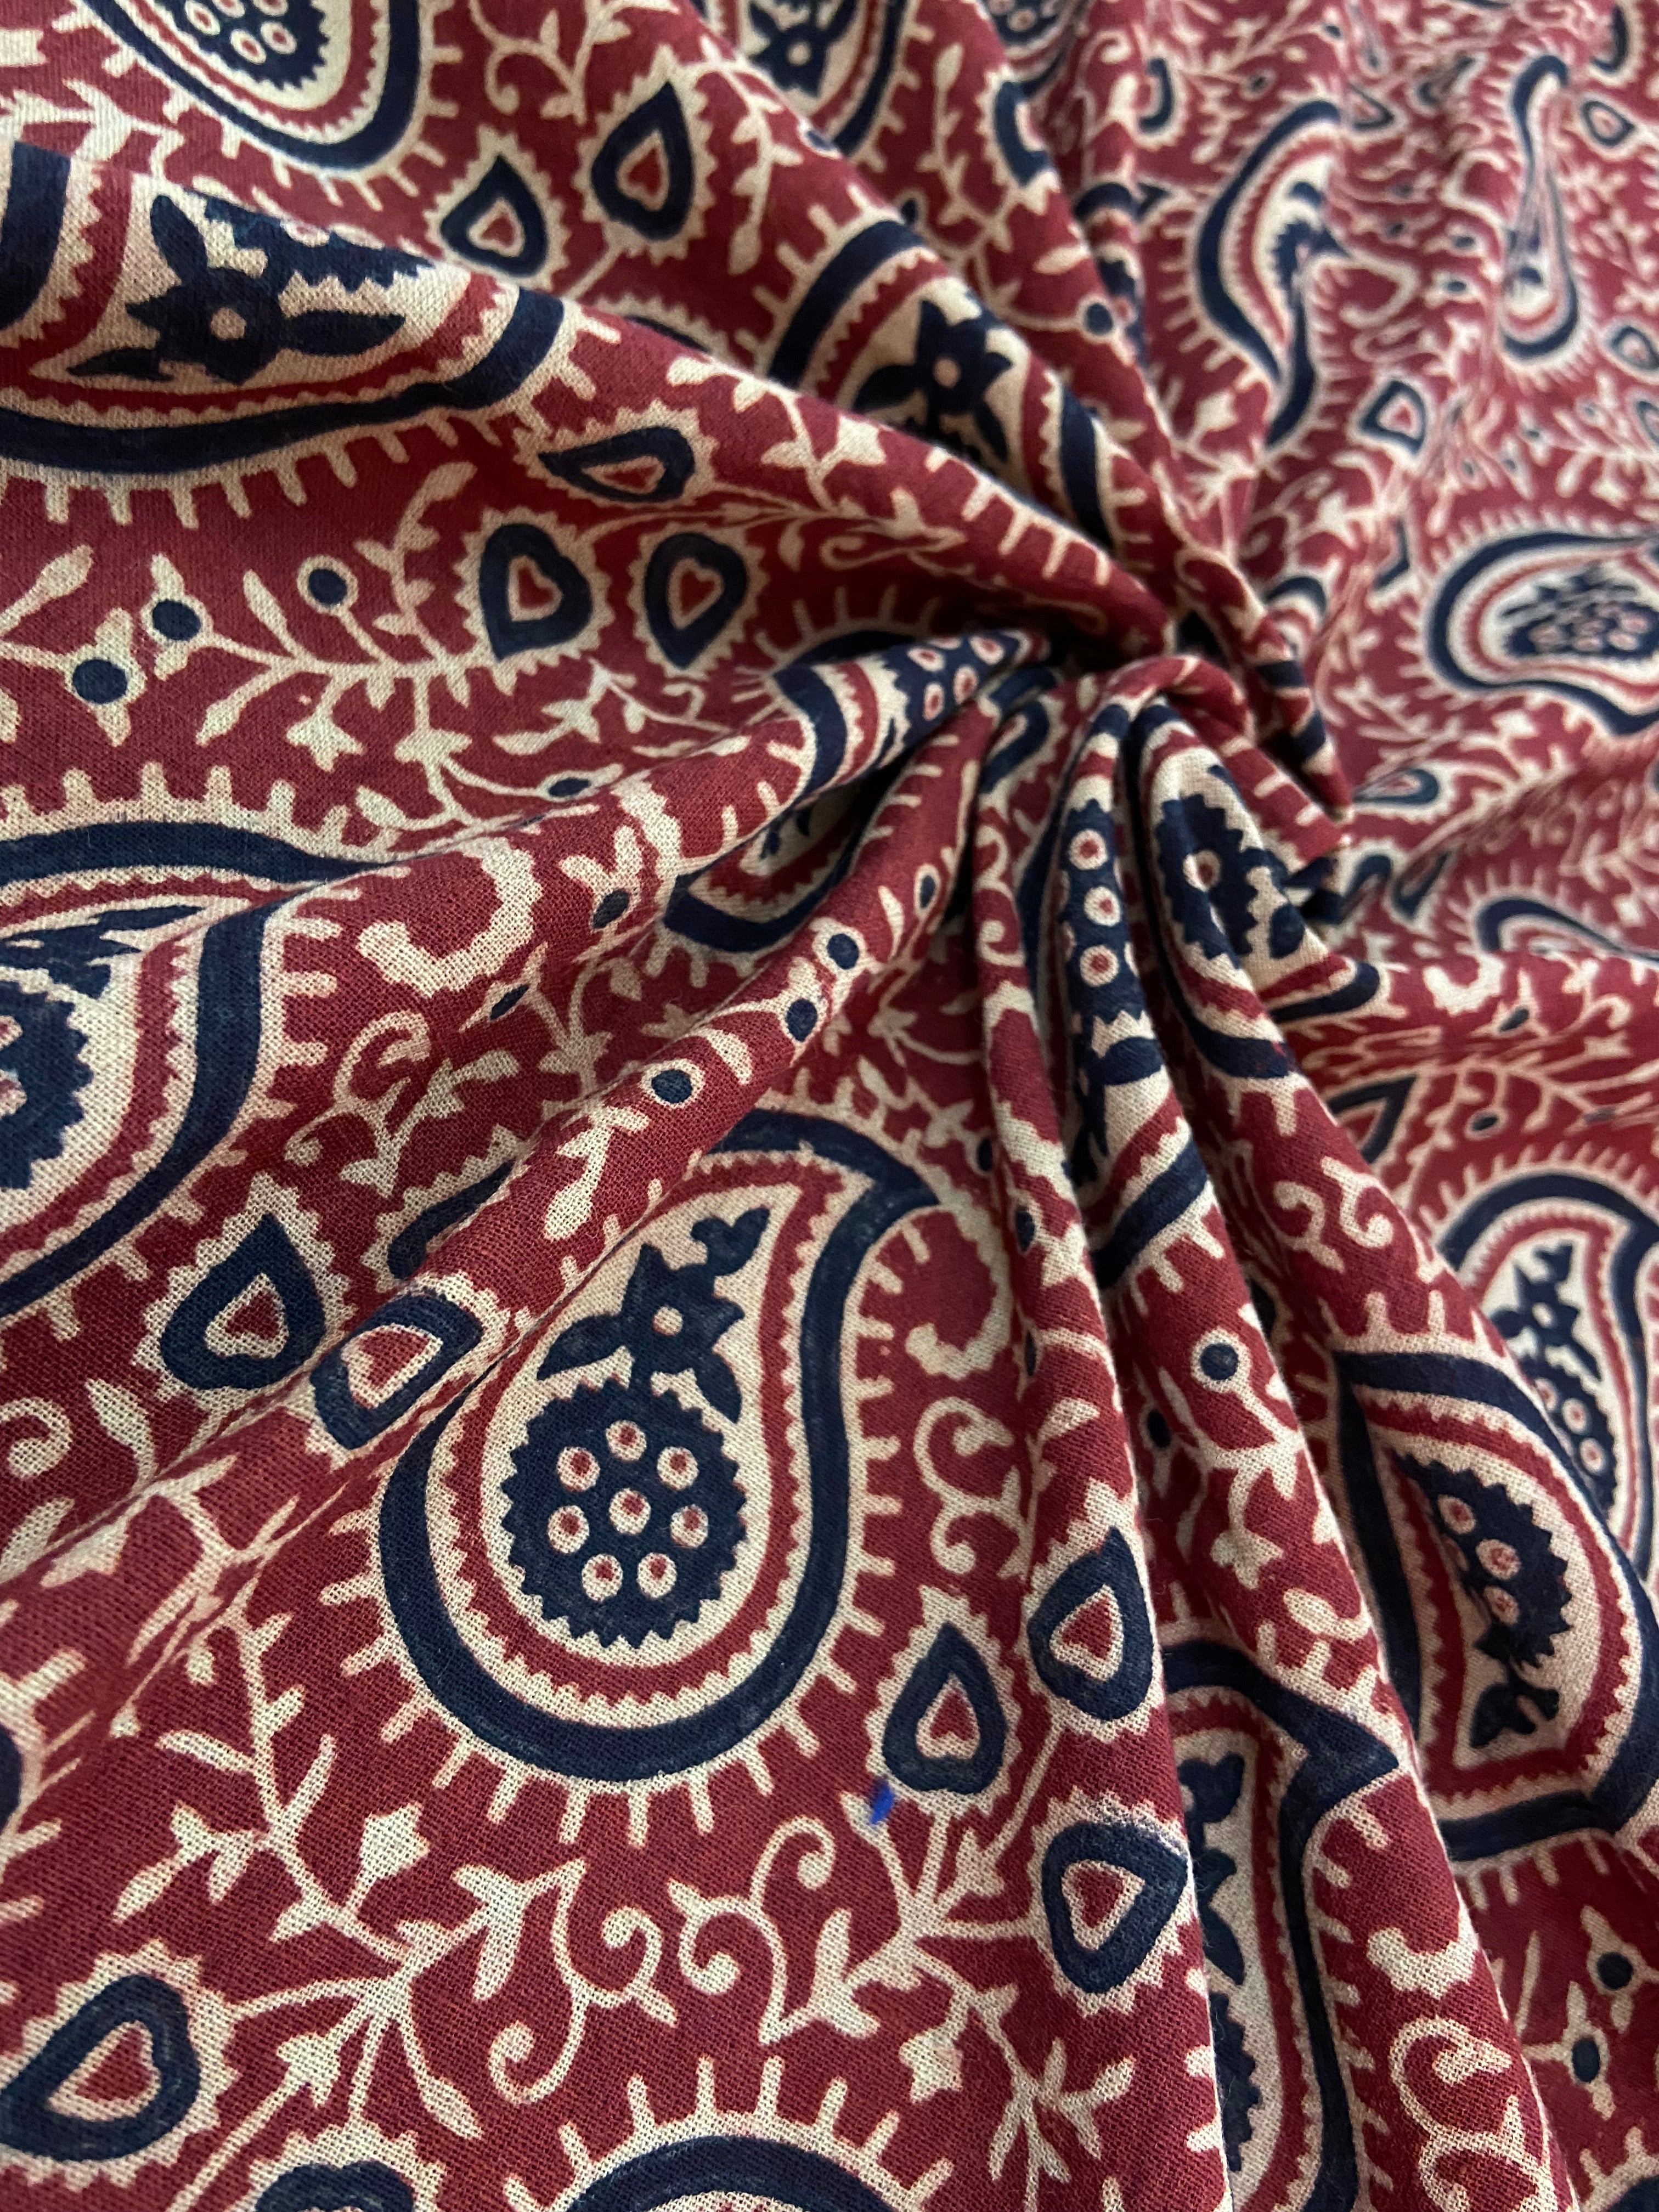 Fabric #041